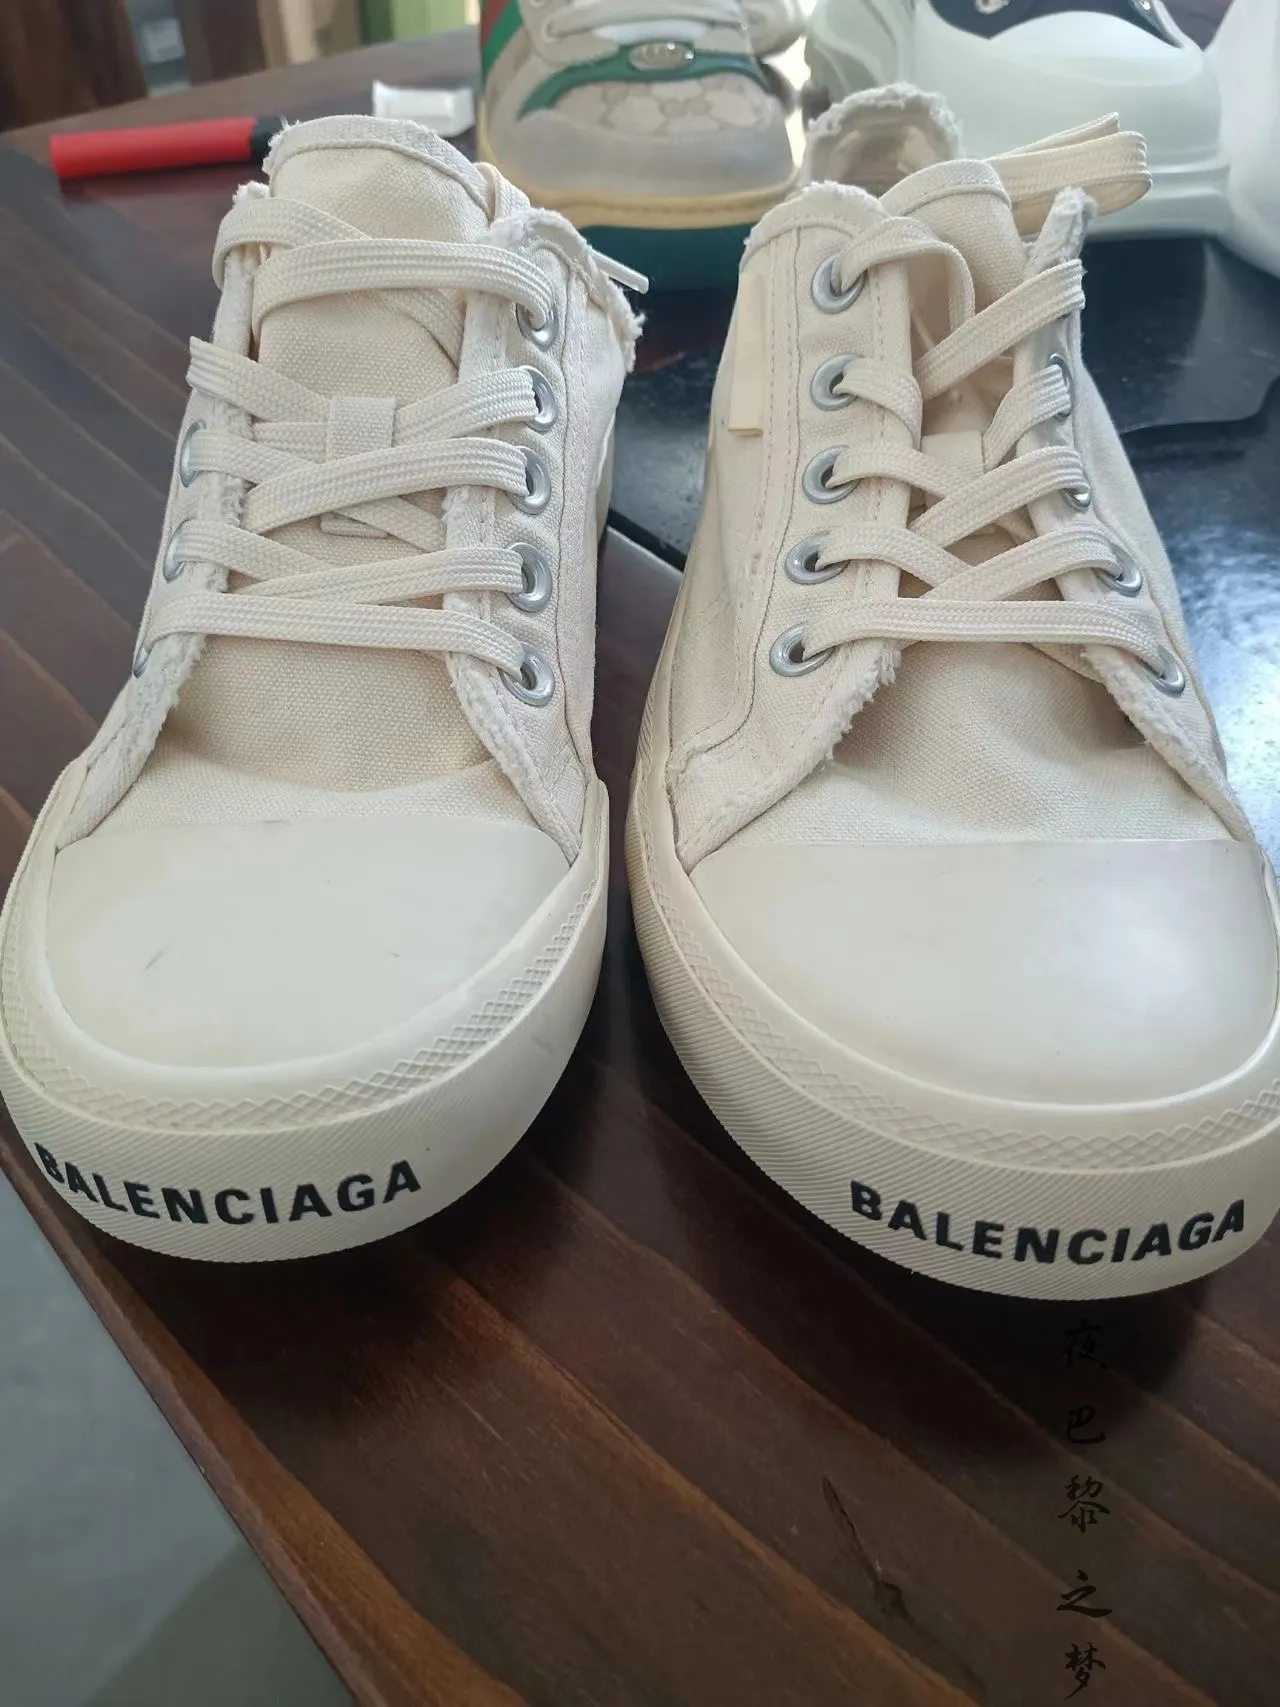 Chiến lược táo bạo của Balenciaga với những đôi giày bị phá hủy  LUXUOVN